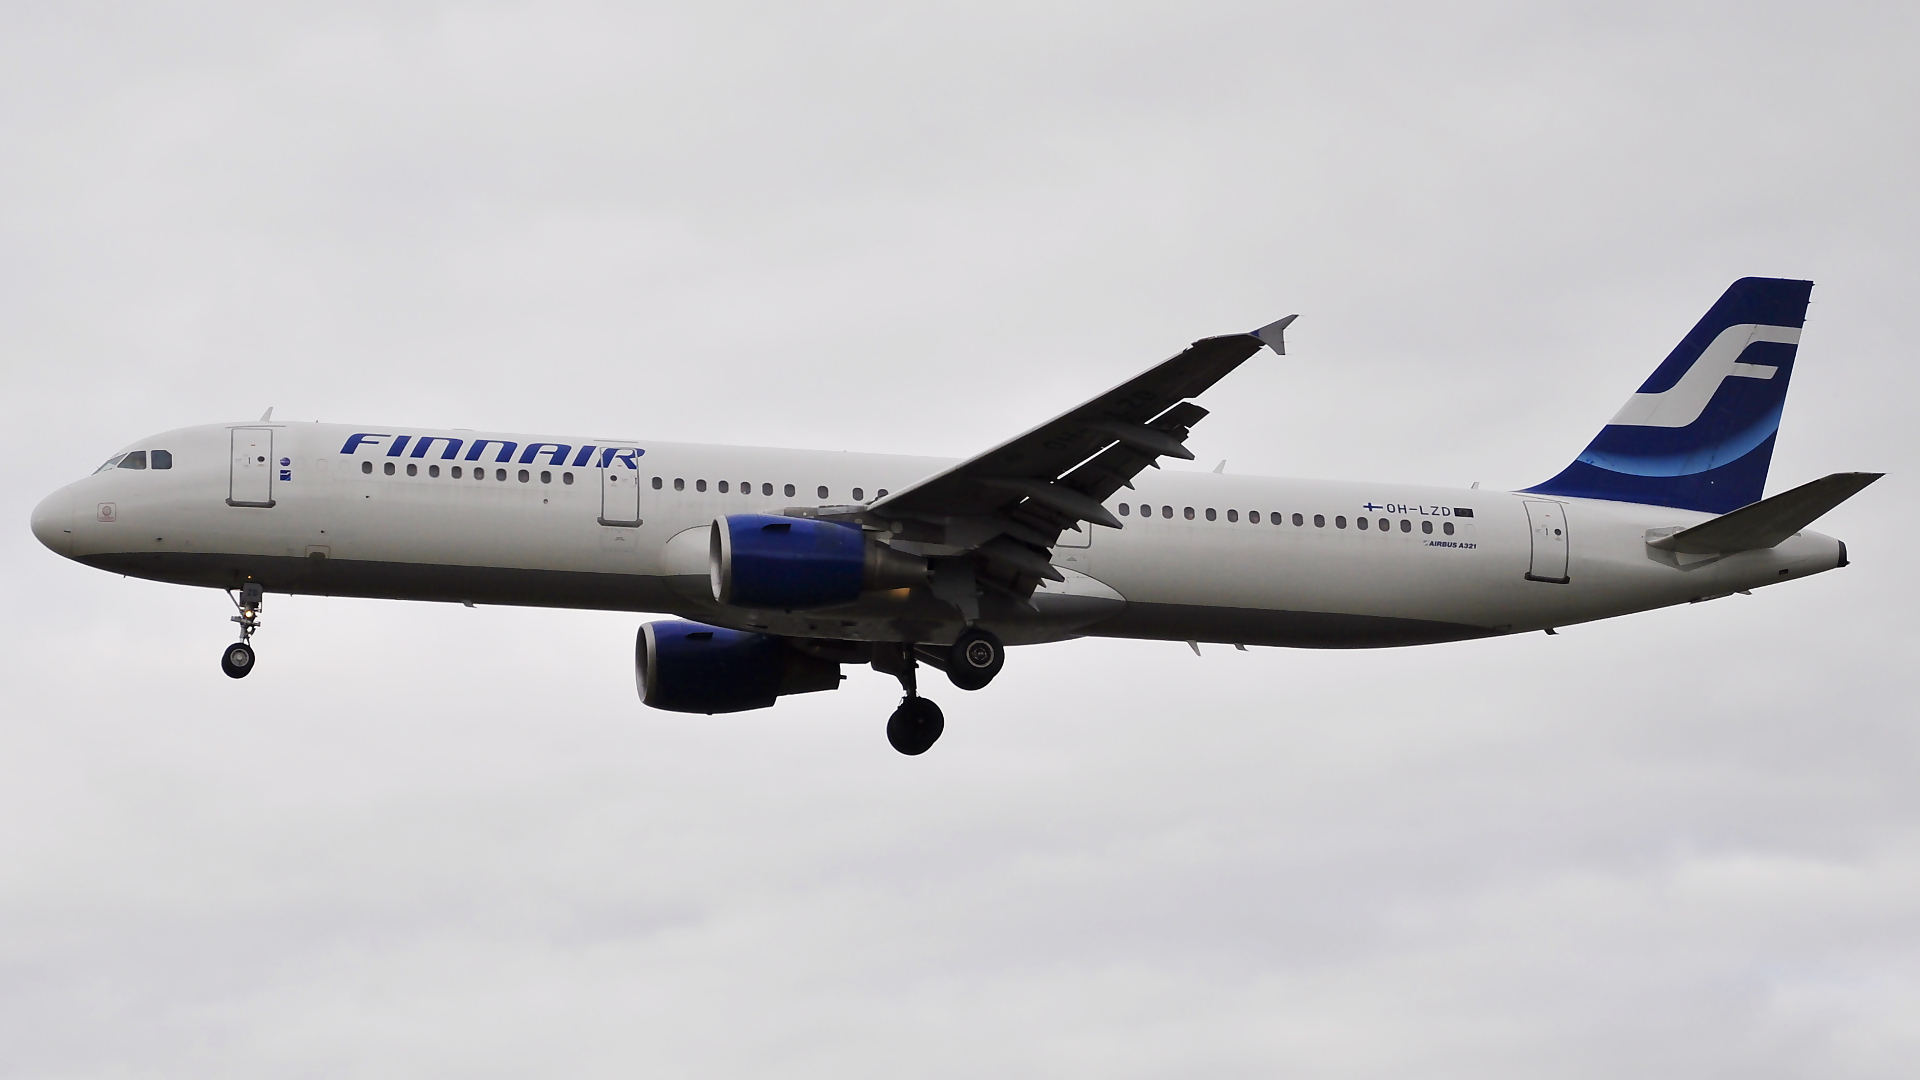 OH-LZD ✈ Finnair Airbus 321-211 @ London-Heathrow